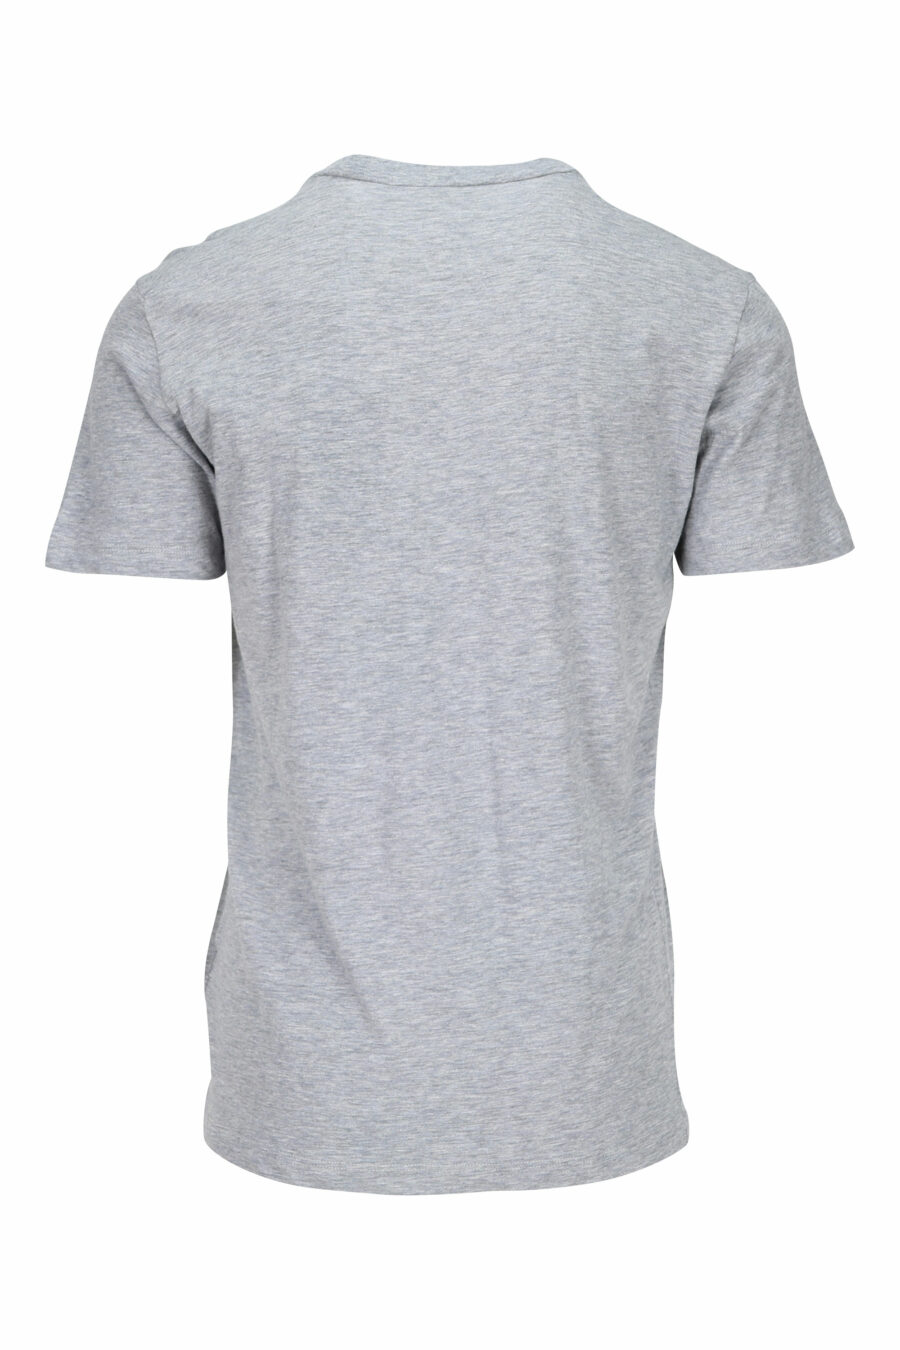 Graues T-Shirt mit klassisch blauem Maxilogo - 8054148116491 1